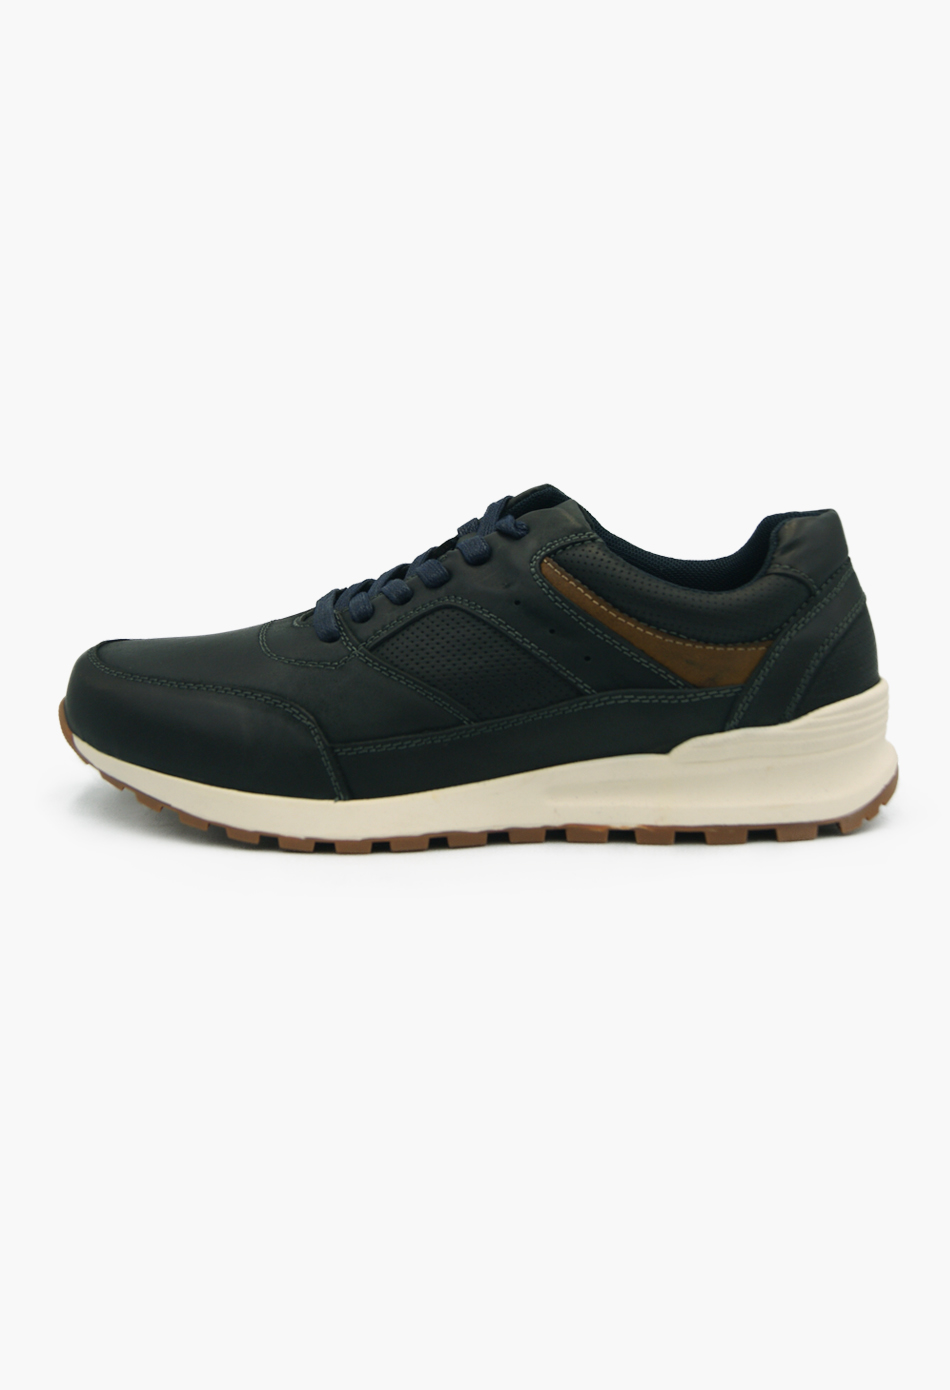 Ανδρικά Αθλητικά Παπούτσια για Τρέξιμο Μαύρο / M-3349-black ΑΘΛΗΤΙΚΑ & SNEAKERS joya.gr